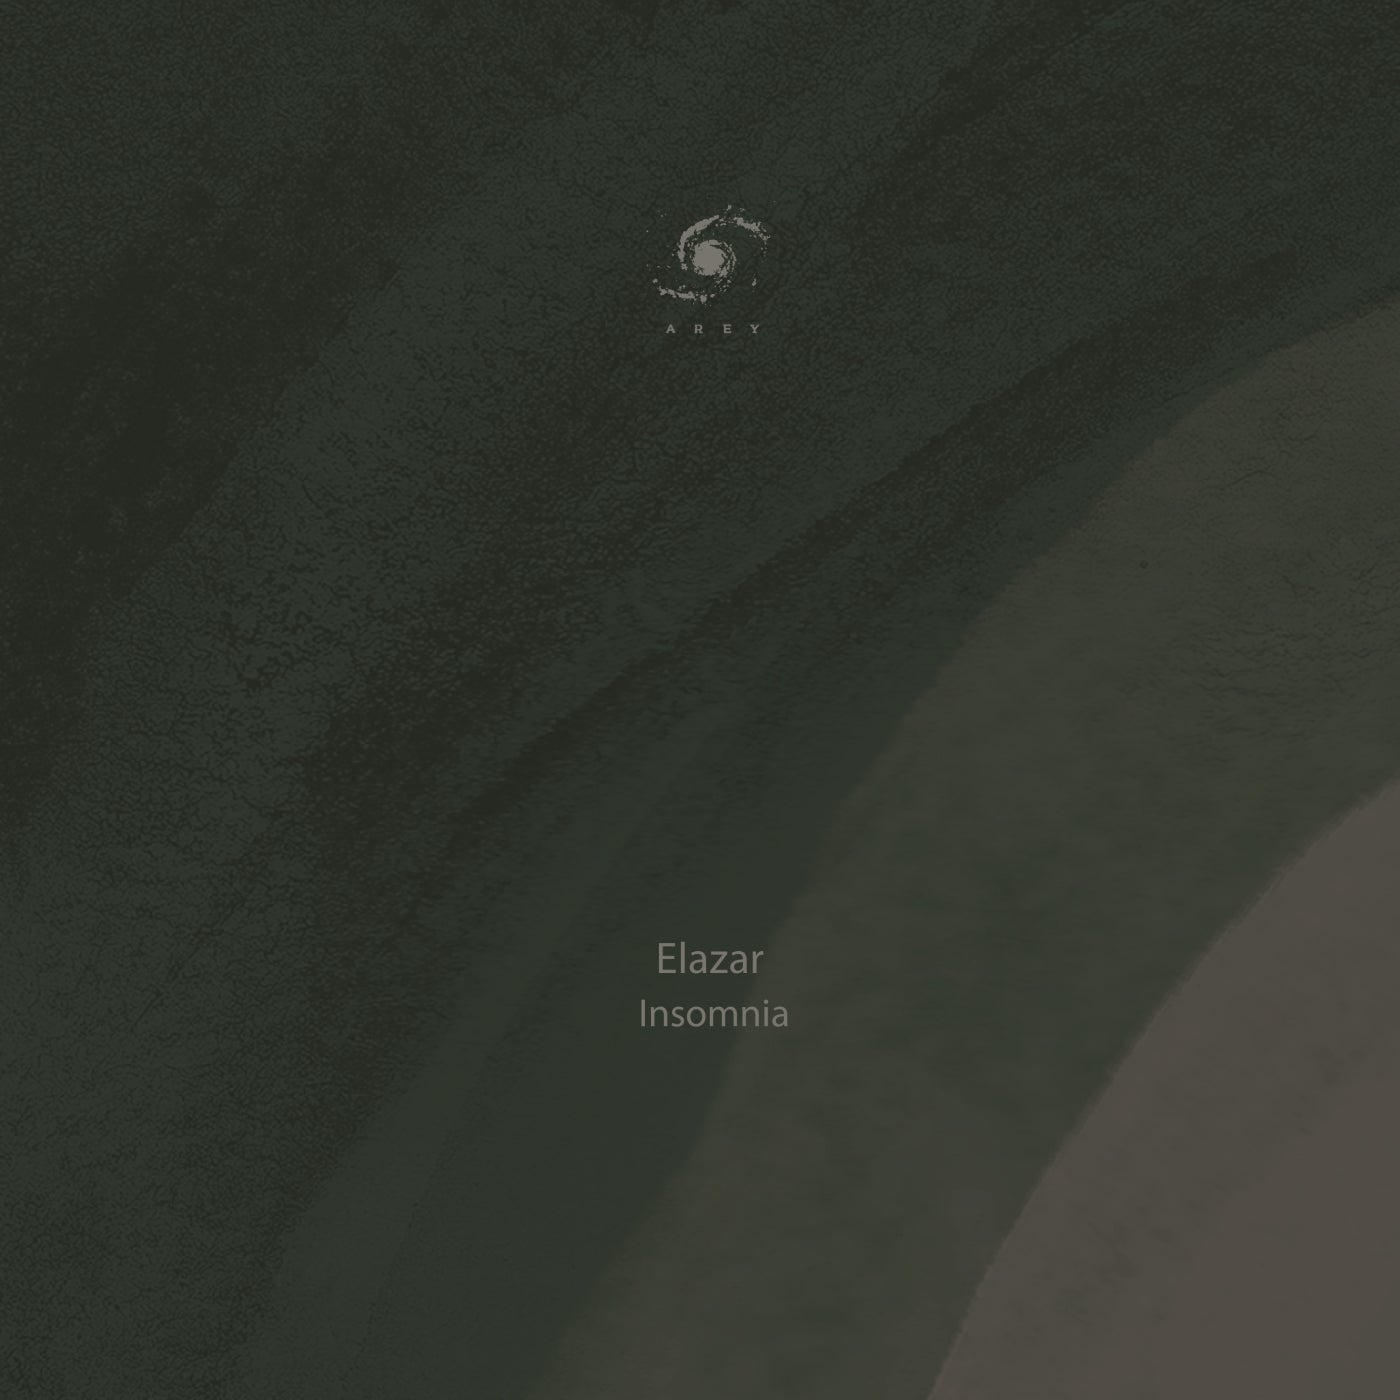 Elazar – Insomnia [AR313]